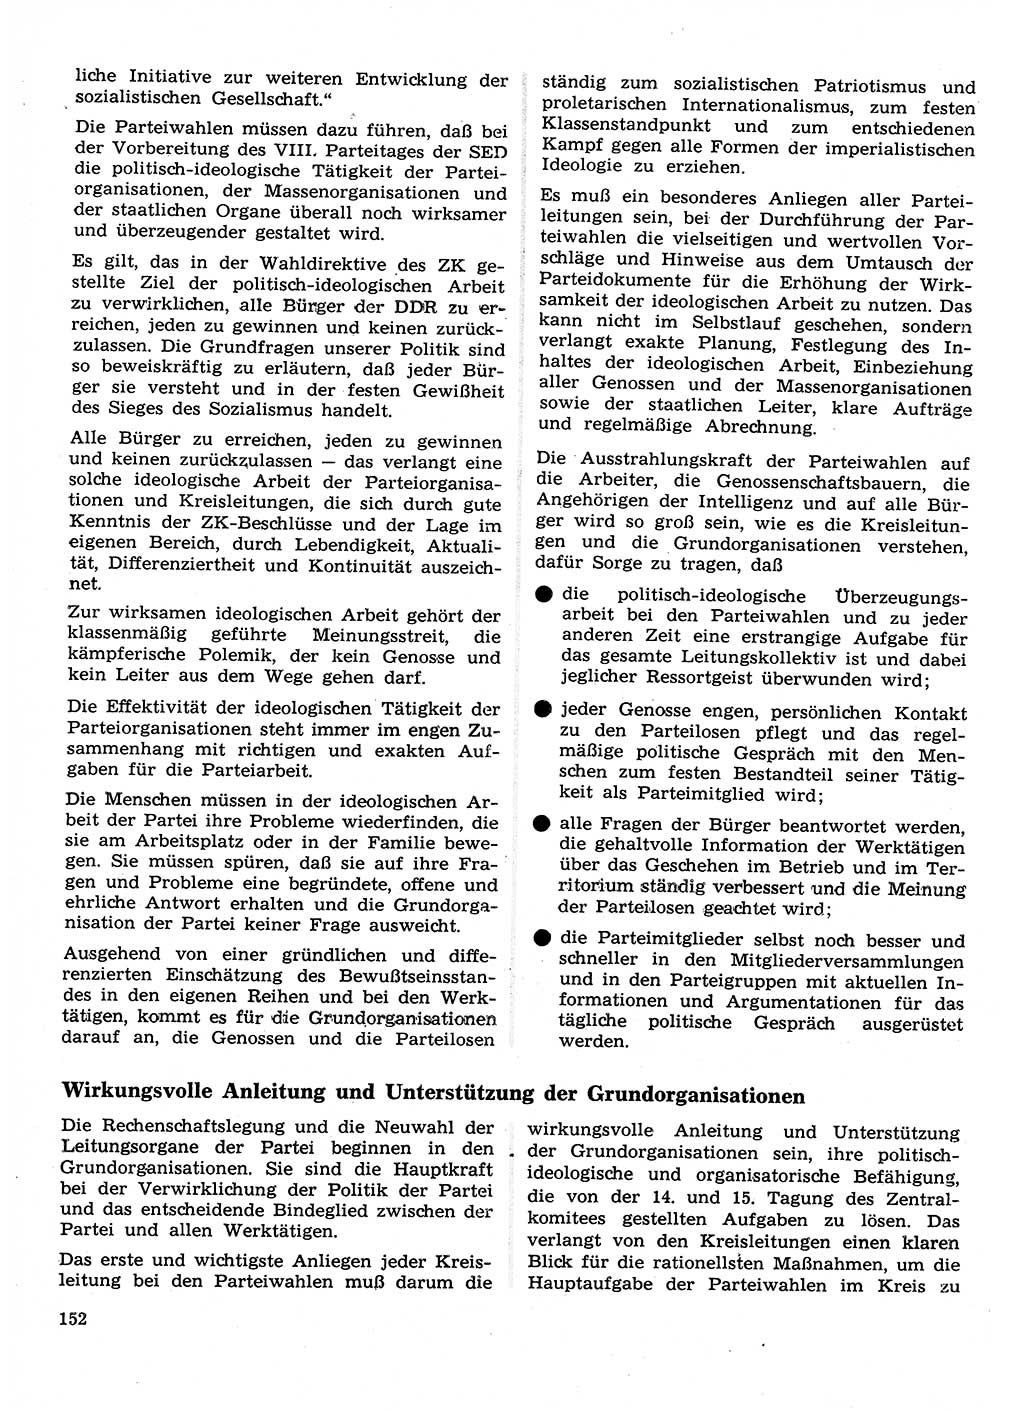 Neuer Weg (NW), Organ des Zentralkomitees (ZK) der SED (Sozialistische Einheitspartei Deutschlands) für Fragen des Parteilebens, 26. Jahrgang [Deutsche Demokratische Republik (DDR)] 1971, Seite 152 (NW ZK SED DDR 1971, S. 152)